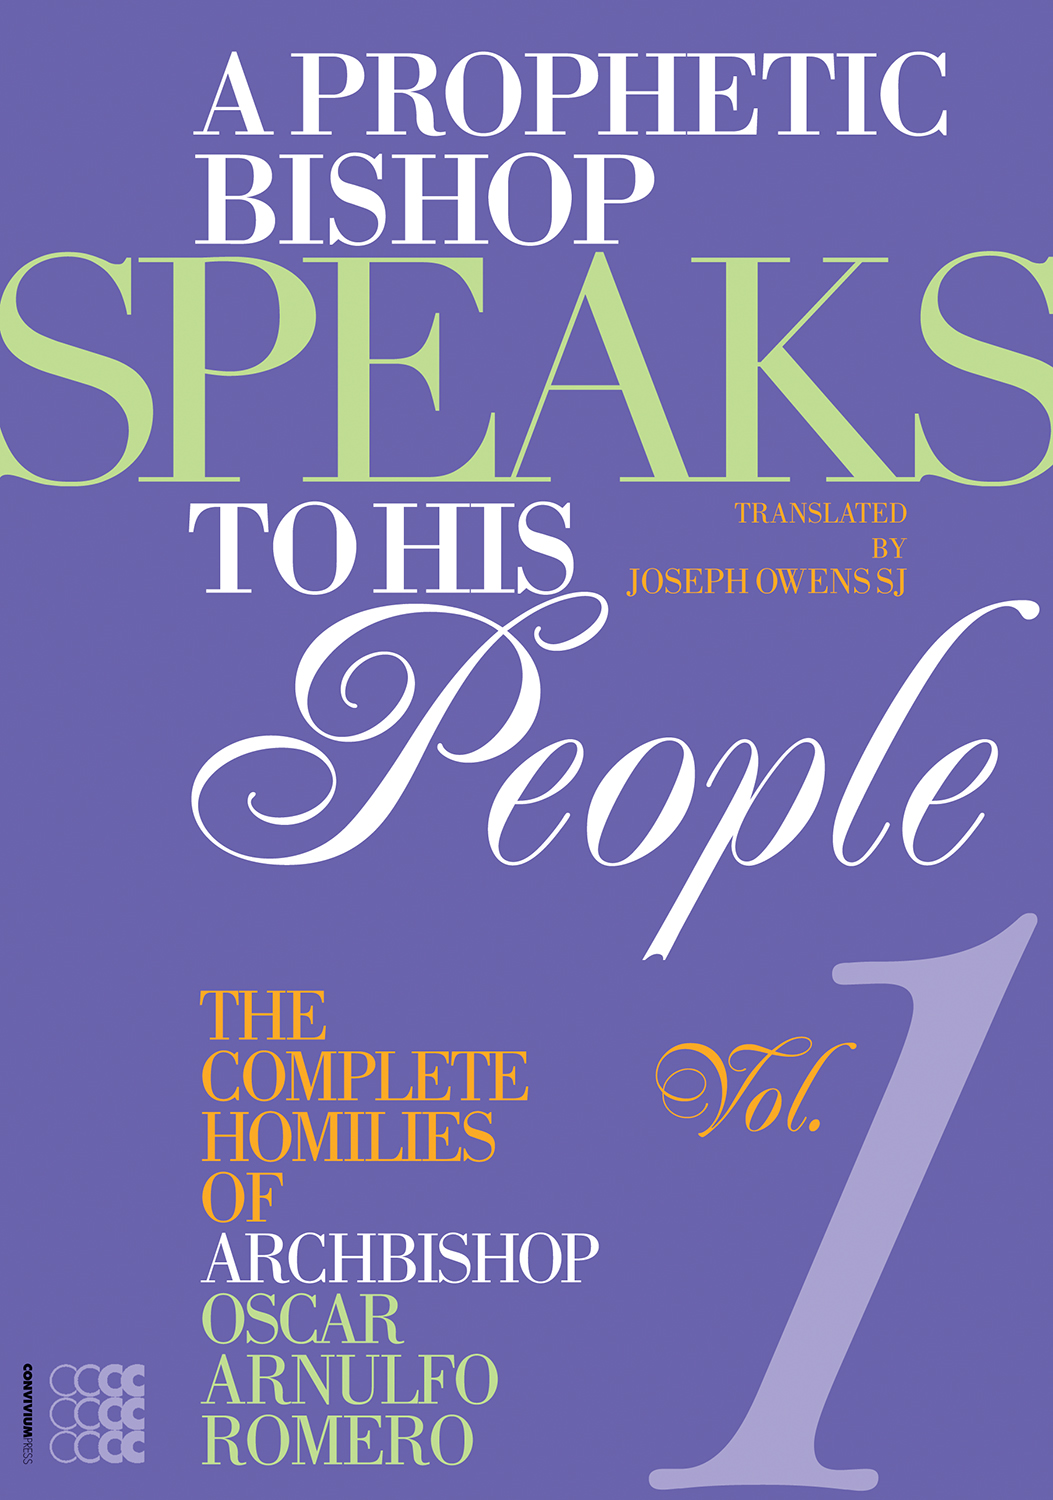 A Prophetic Bishop Speaks to his People (Vol. 1)